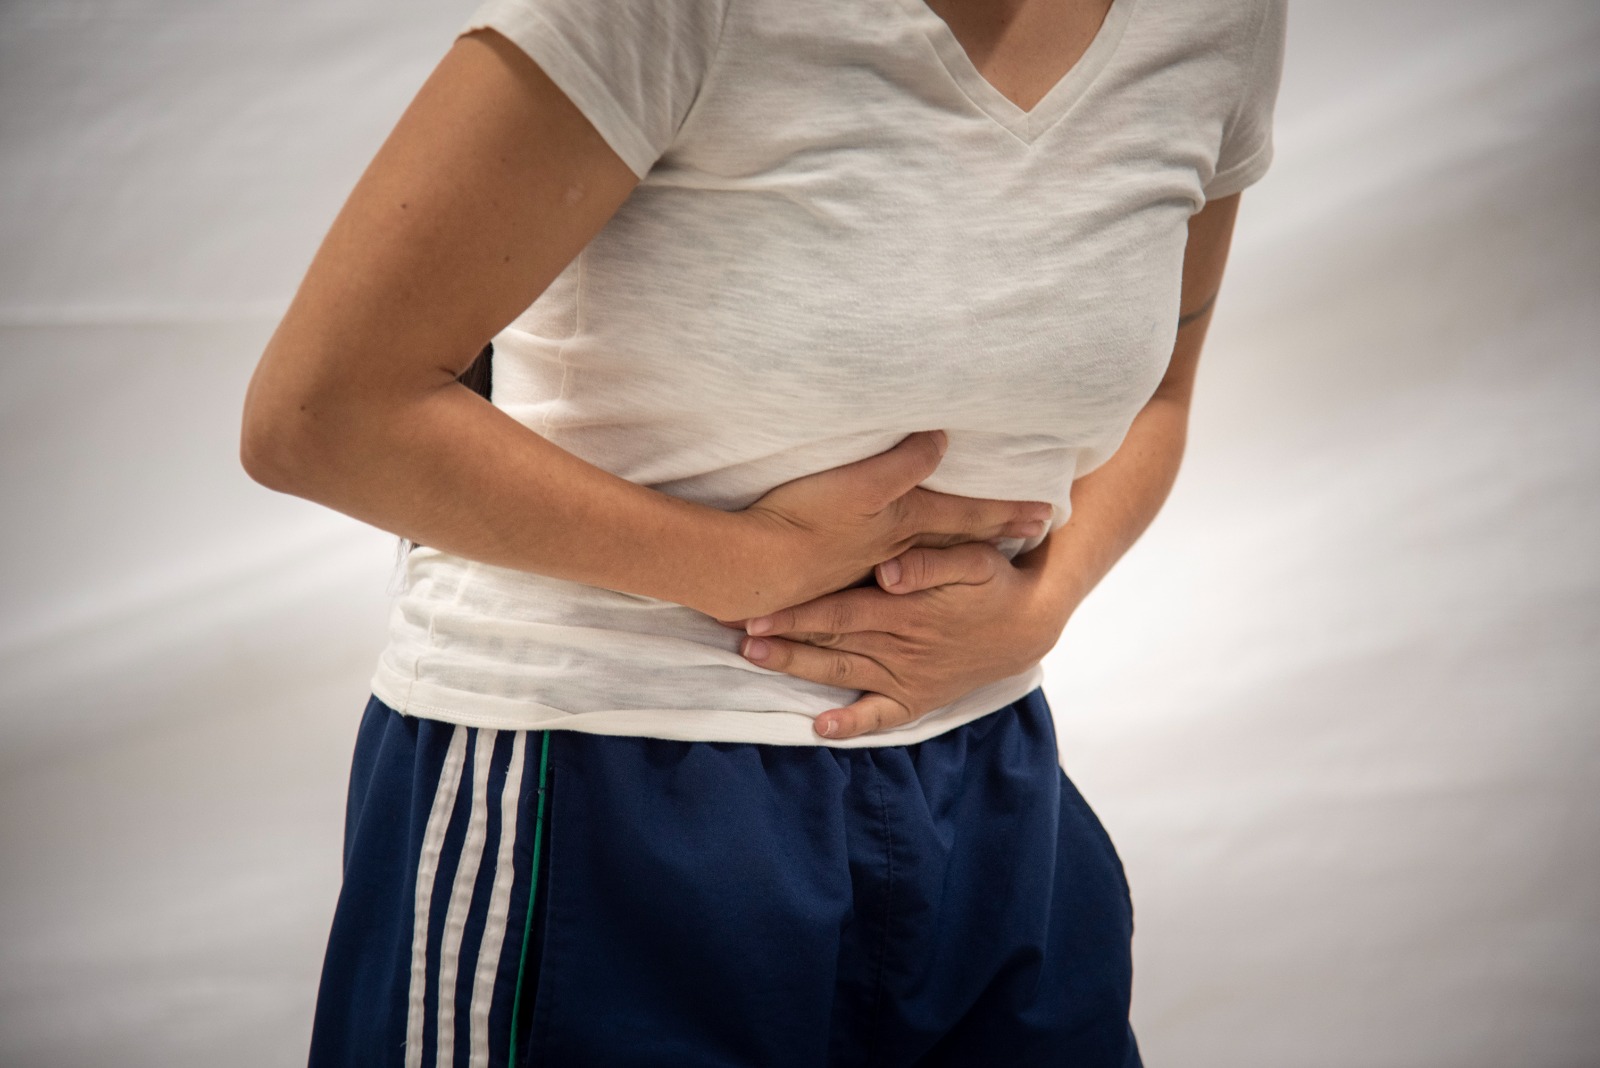 Síndrome de intestino irritable, diarrea, estreñimiento y distensión abdominal son algunos de los trastornos intestinales que afectan entre el 20 y el 40 % de la población mundial. Foto: archivo Unimedios.